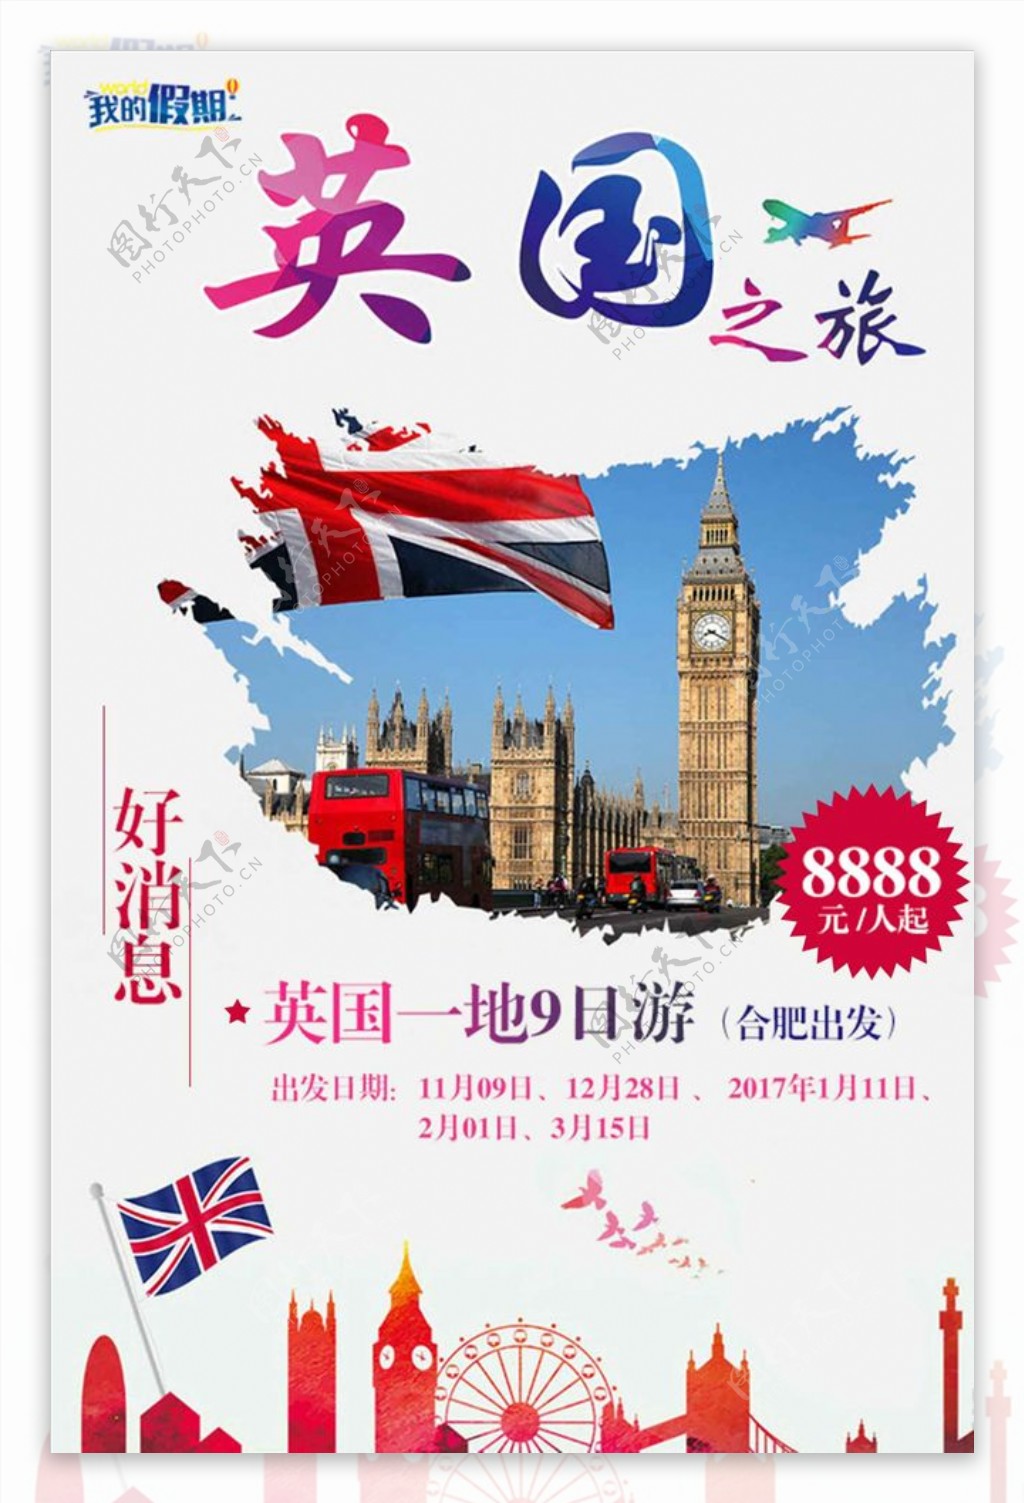 欧美风情英国旅游海报设计